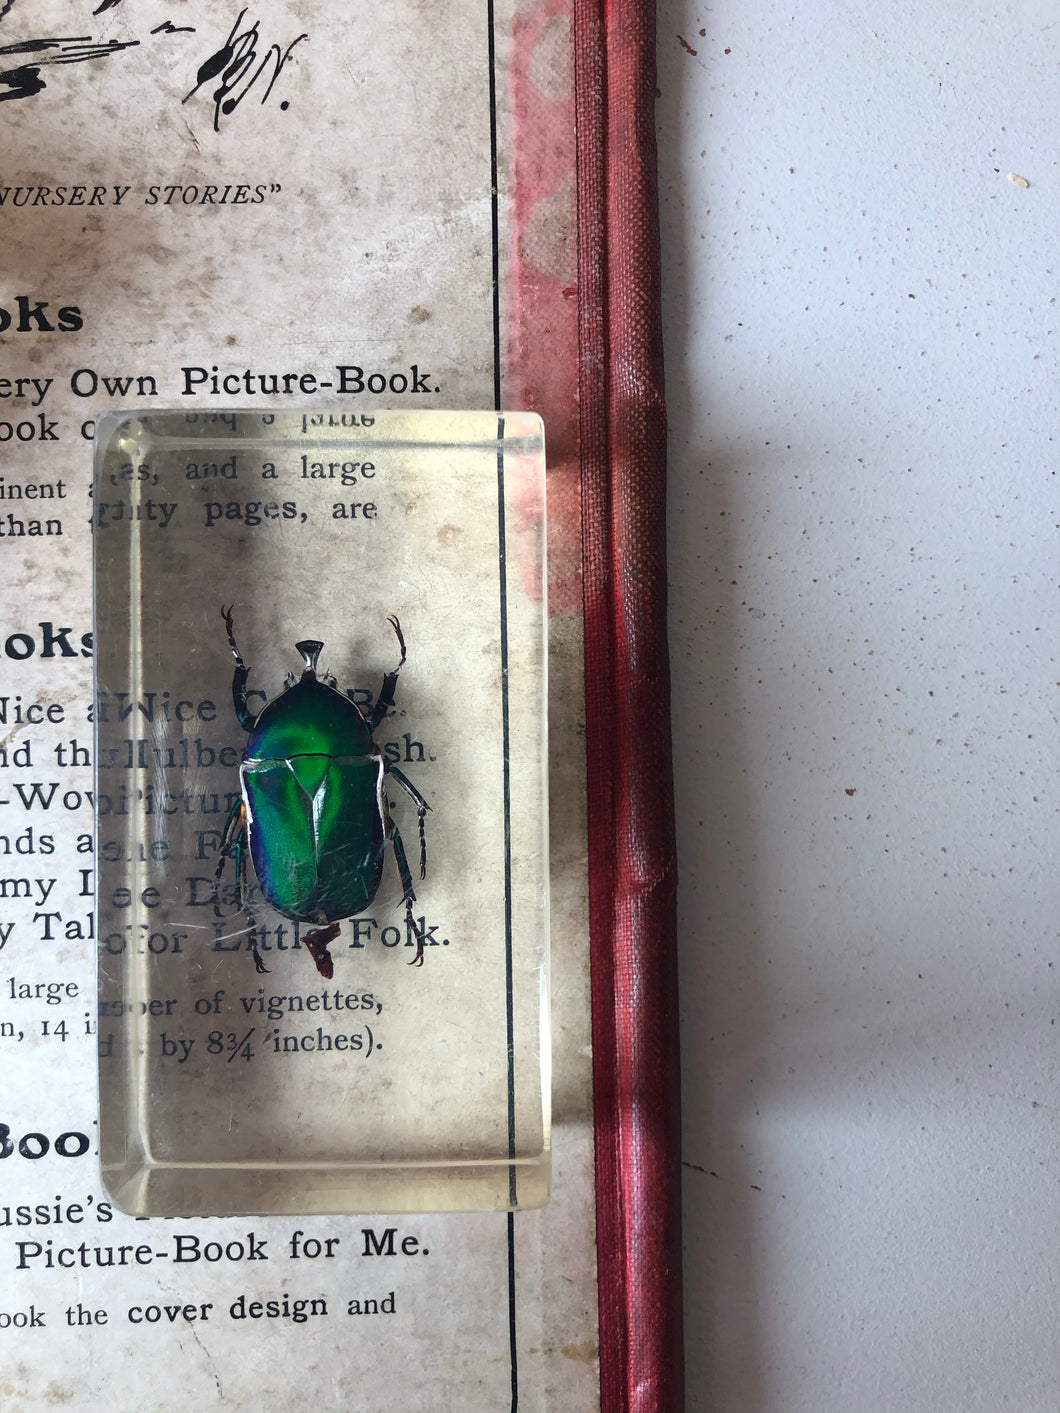 Vintage Green Beetle Resin Block